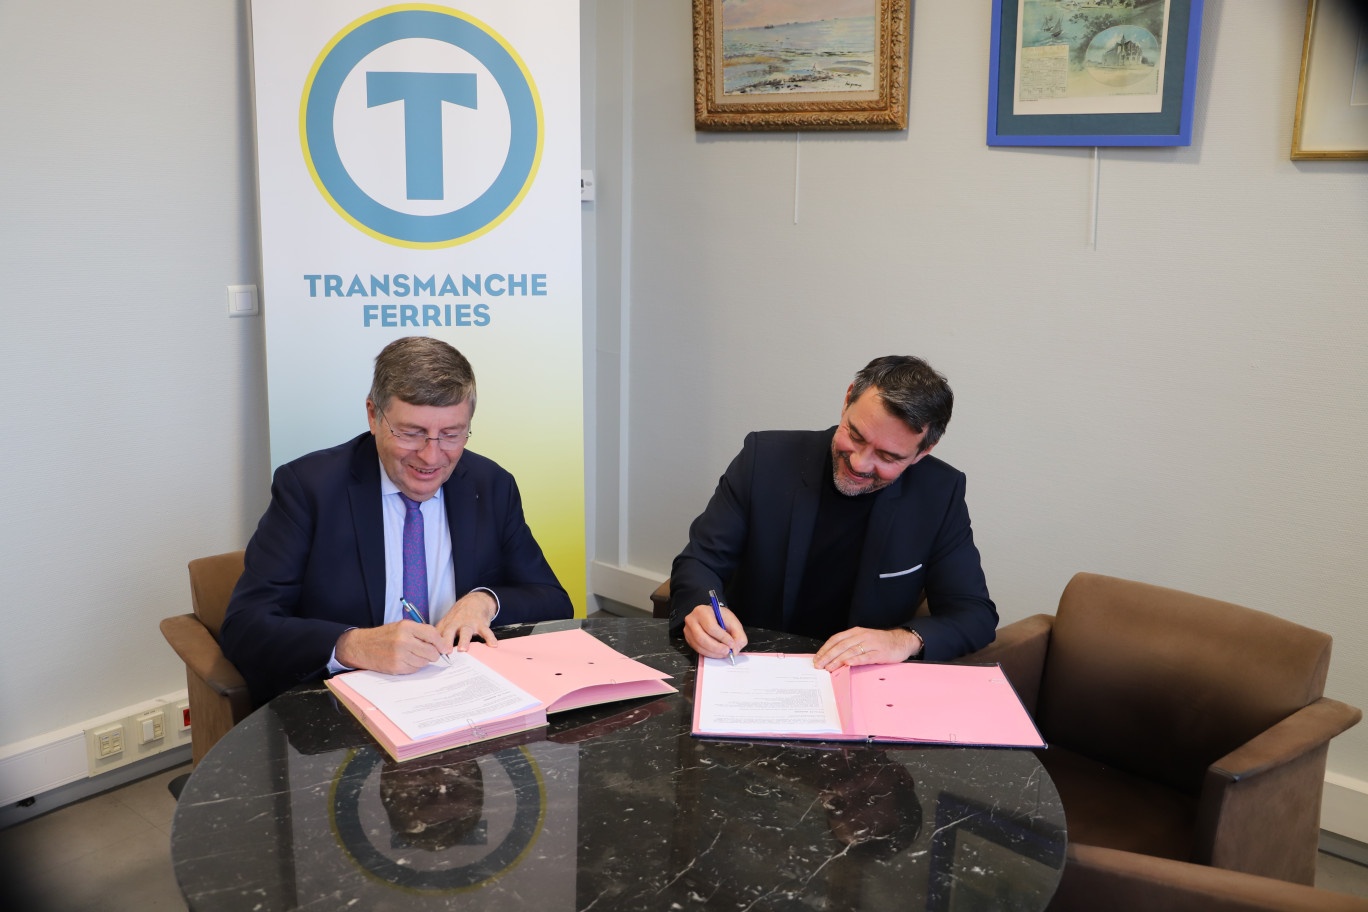 La signature de ce nouveau contrat qui lie le Syndicat mixte de promotion de l’activité transmanche (SMPAT) et DFDS Seaways a eu lieu mardi 15 novembre.